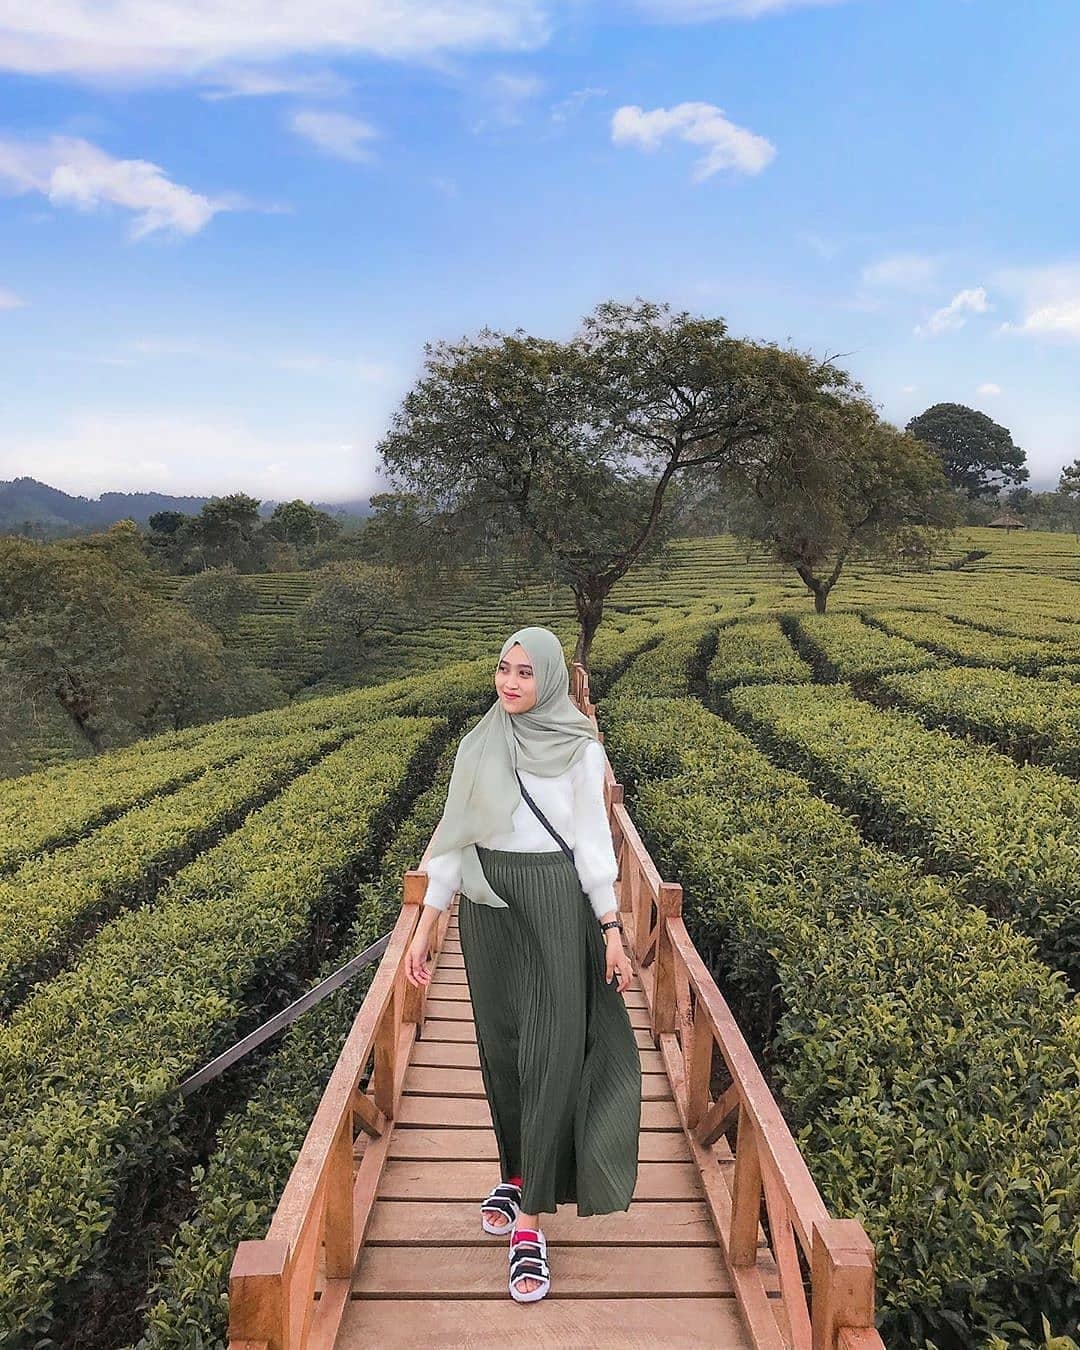 Tiket Masuk Kebun Teh Wonosari Malang 2021, Wisata Dan